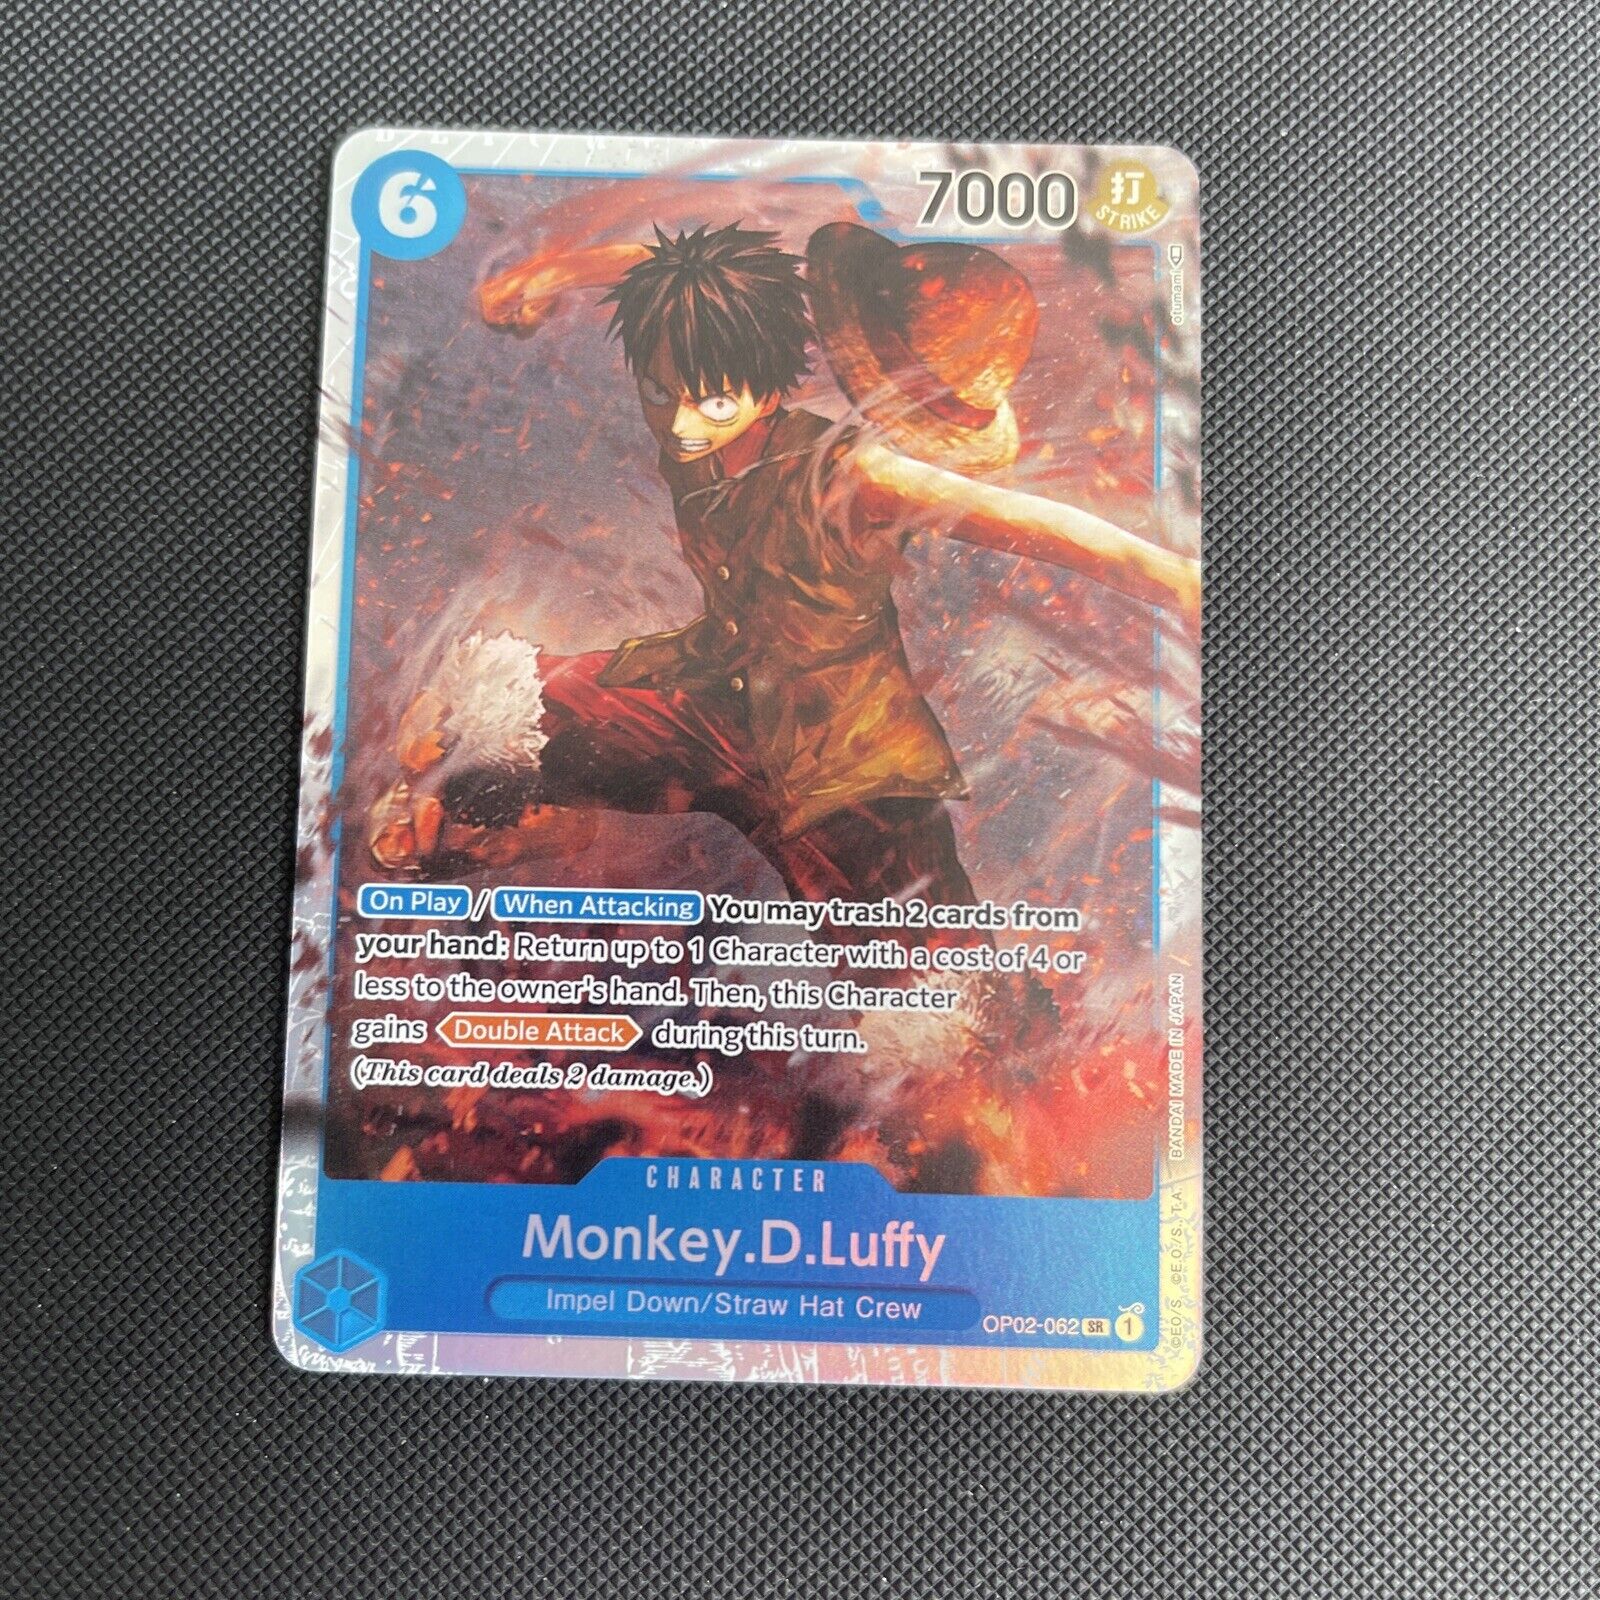 OP02-062 Monkey.D.Luffy Super Rare One Piece TCG Card